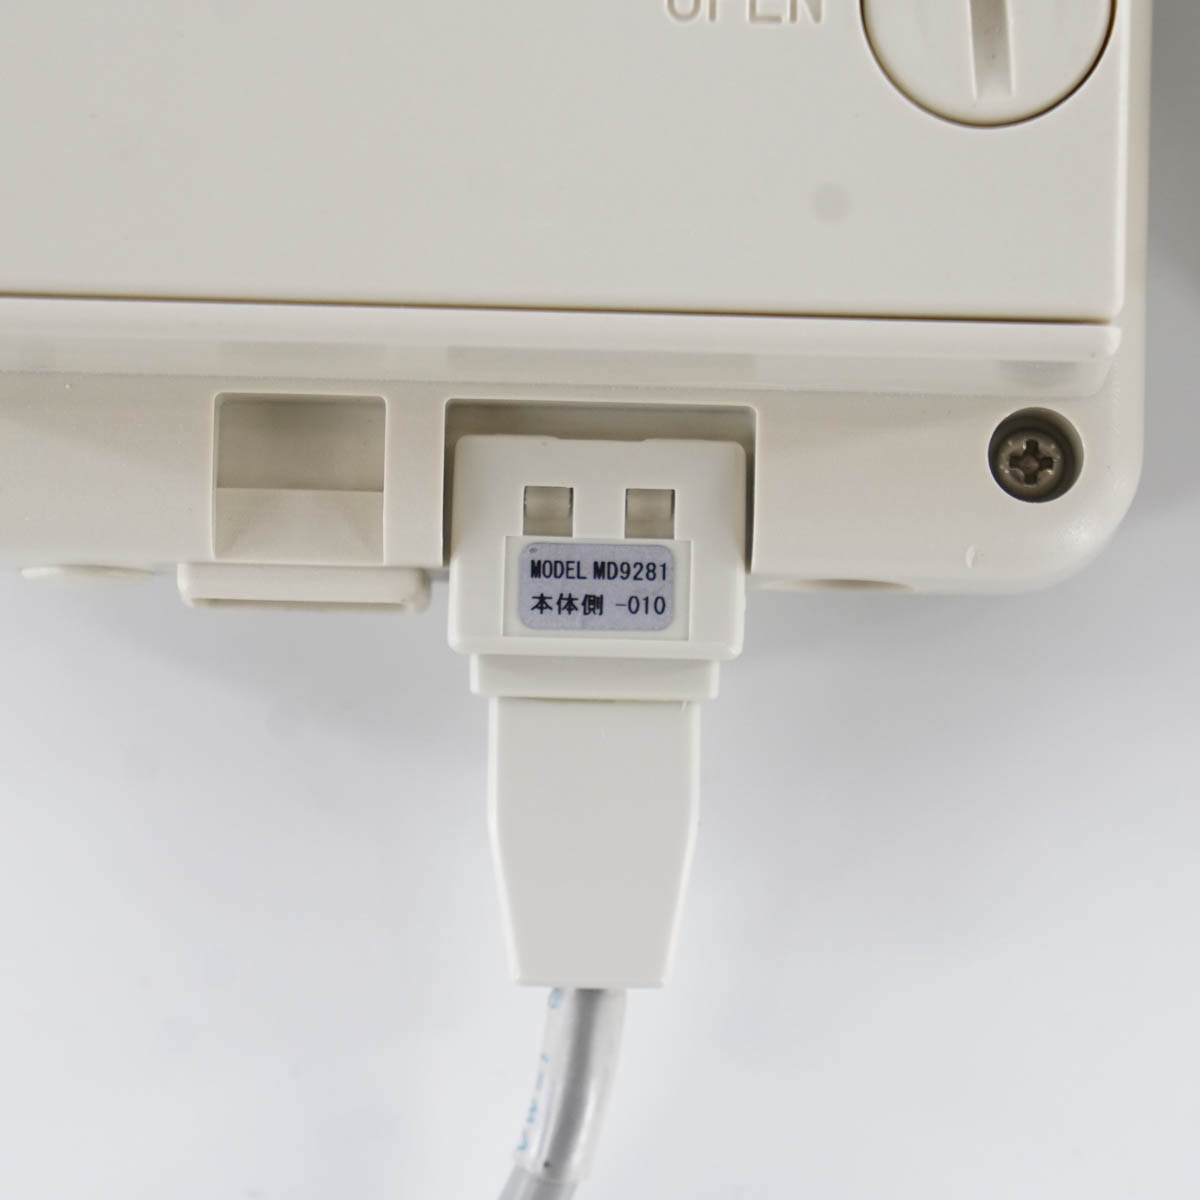 チノー MD8102100 CHINO 監視機能付無線ロガー 送信器 温湿度センサ AC